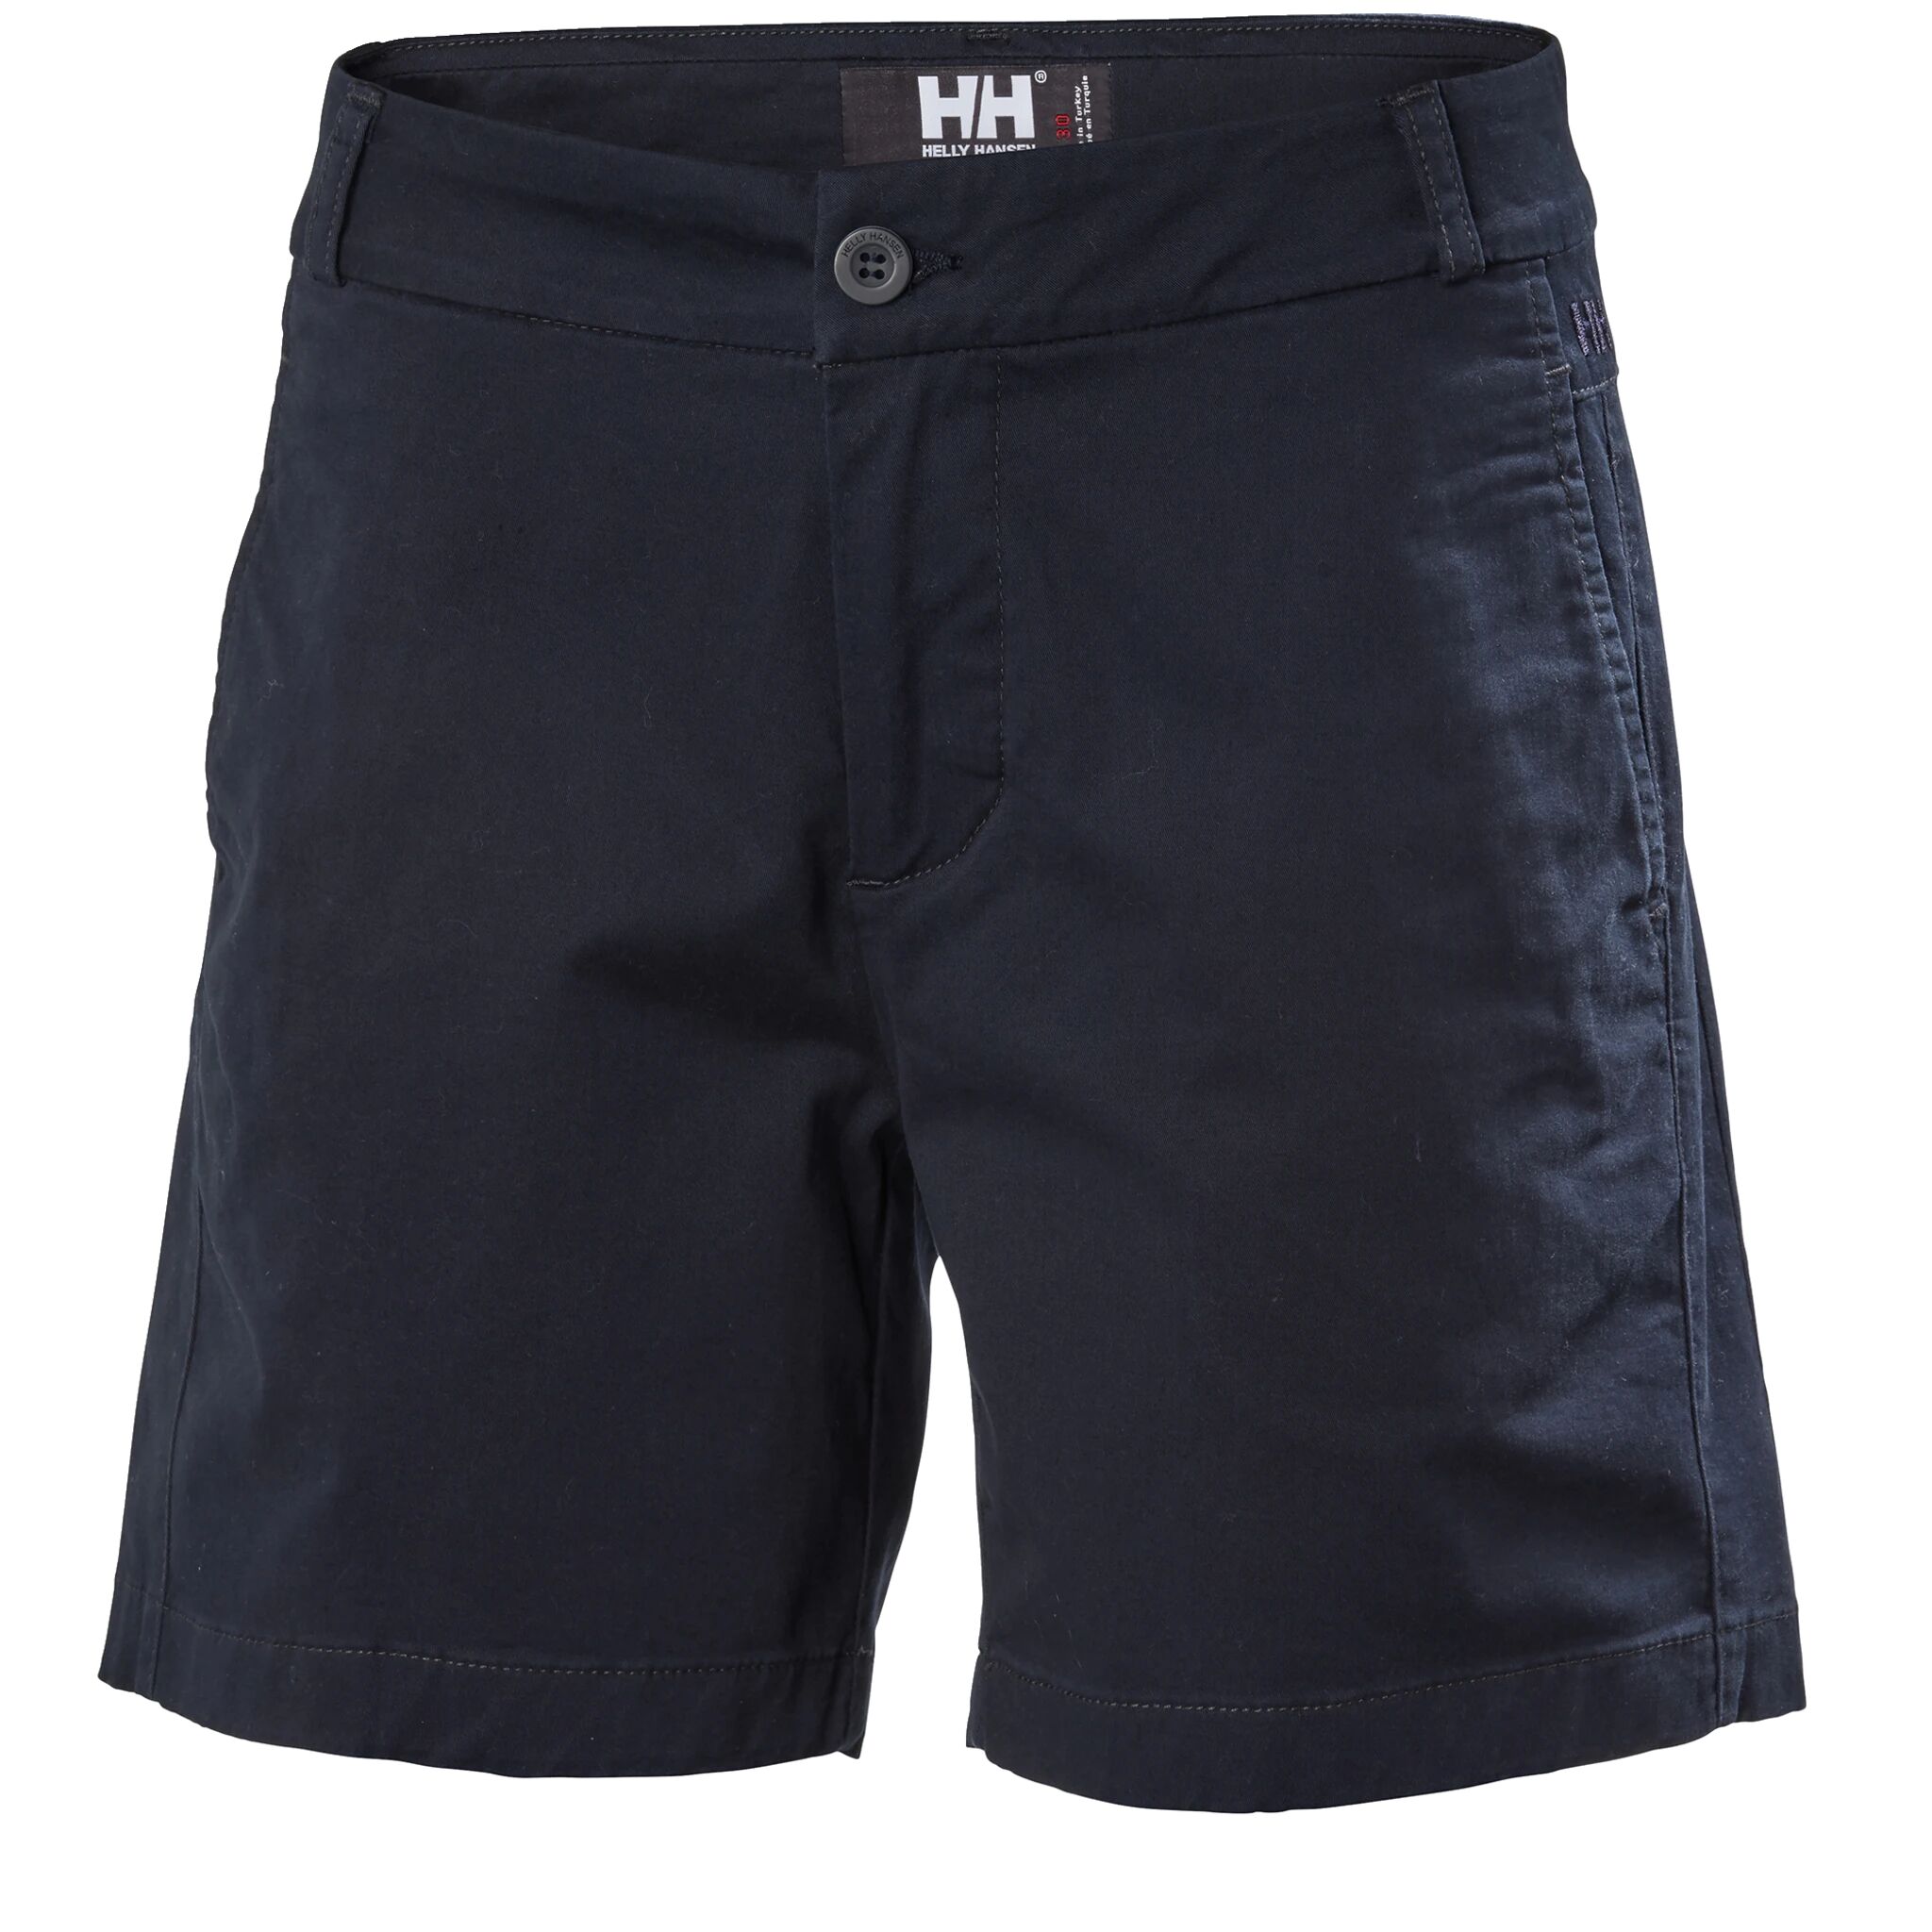 Helly Hansen Crew Shorts, dame 34 navy